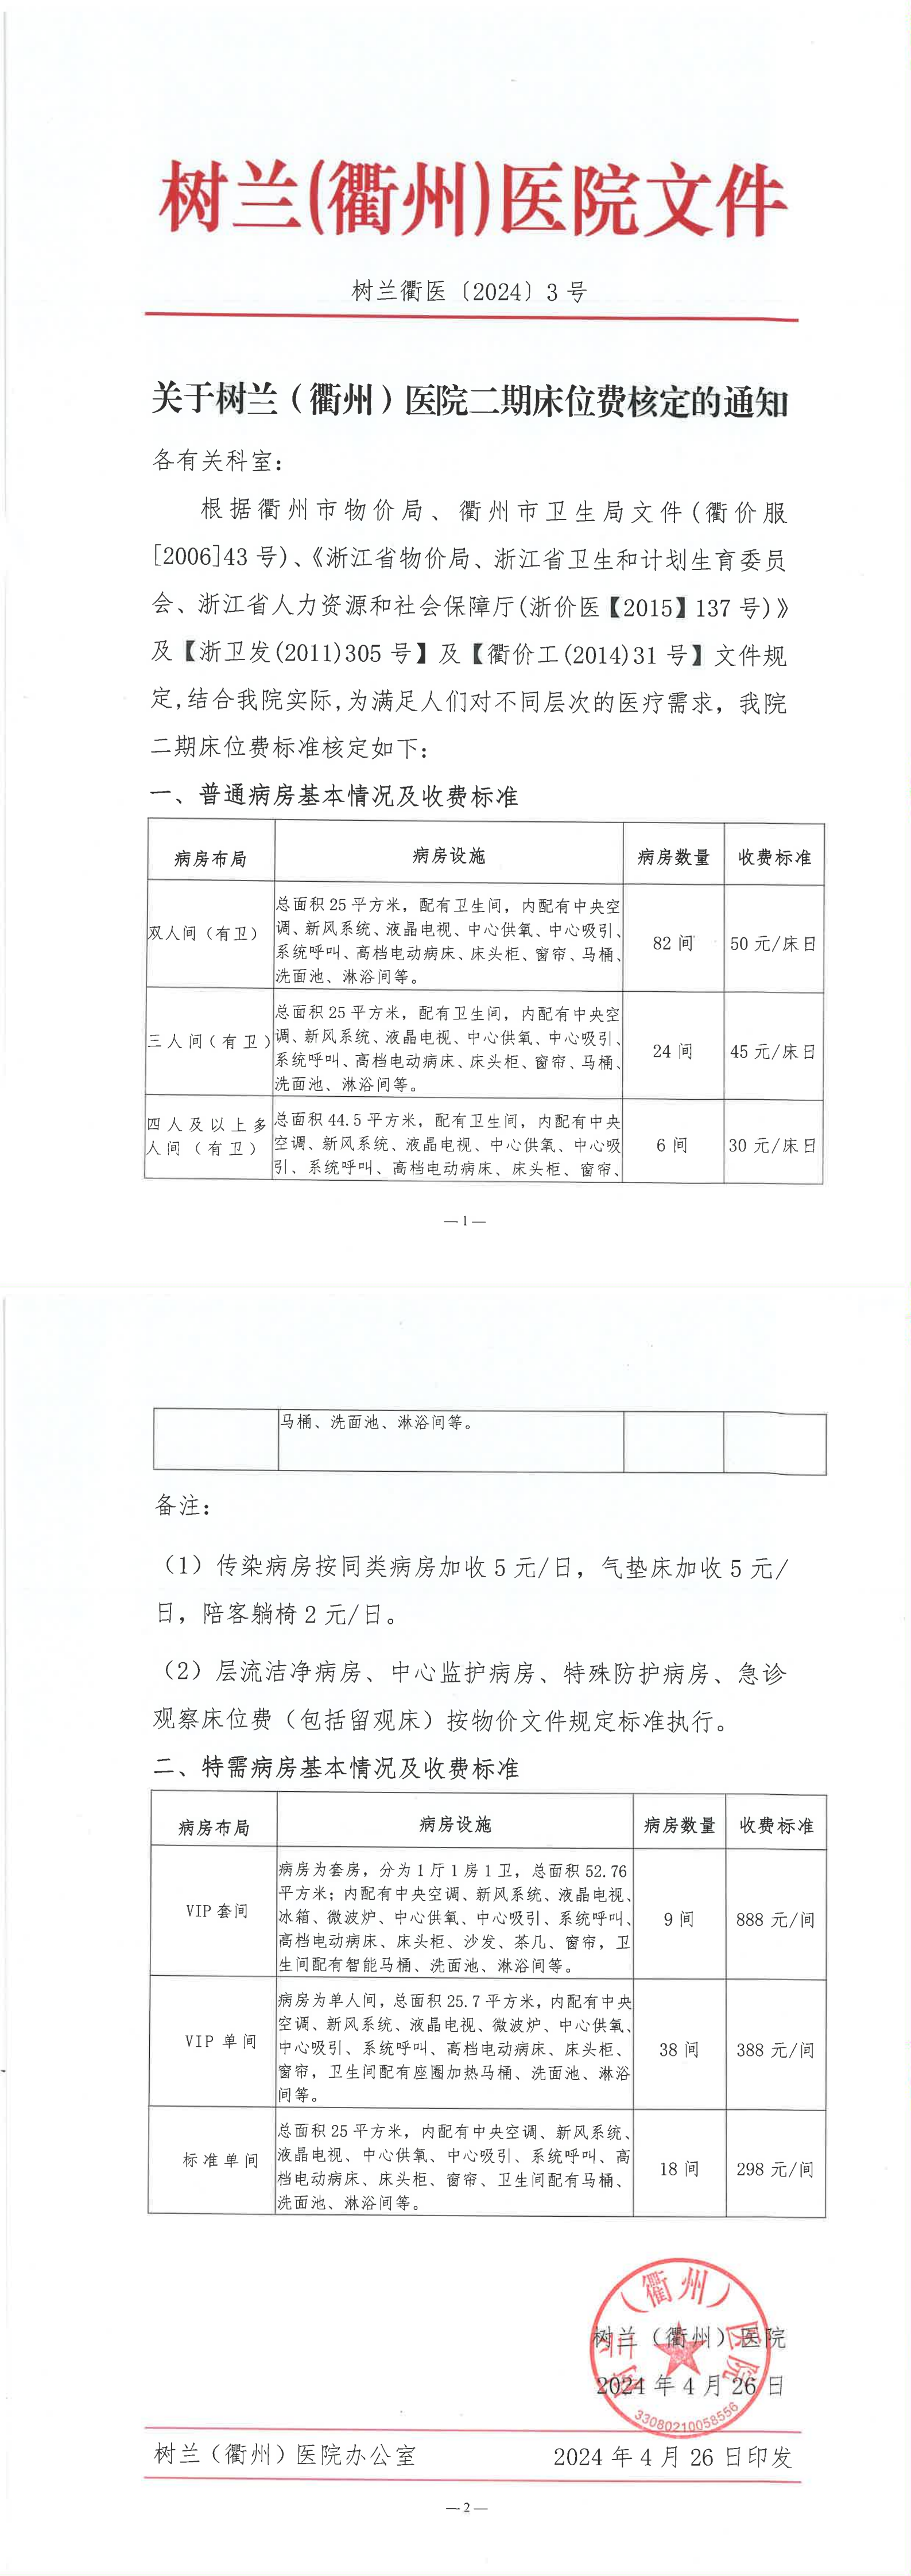 关于树兰(衢州)医院二期床位费核定的通知_00.png